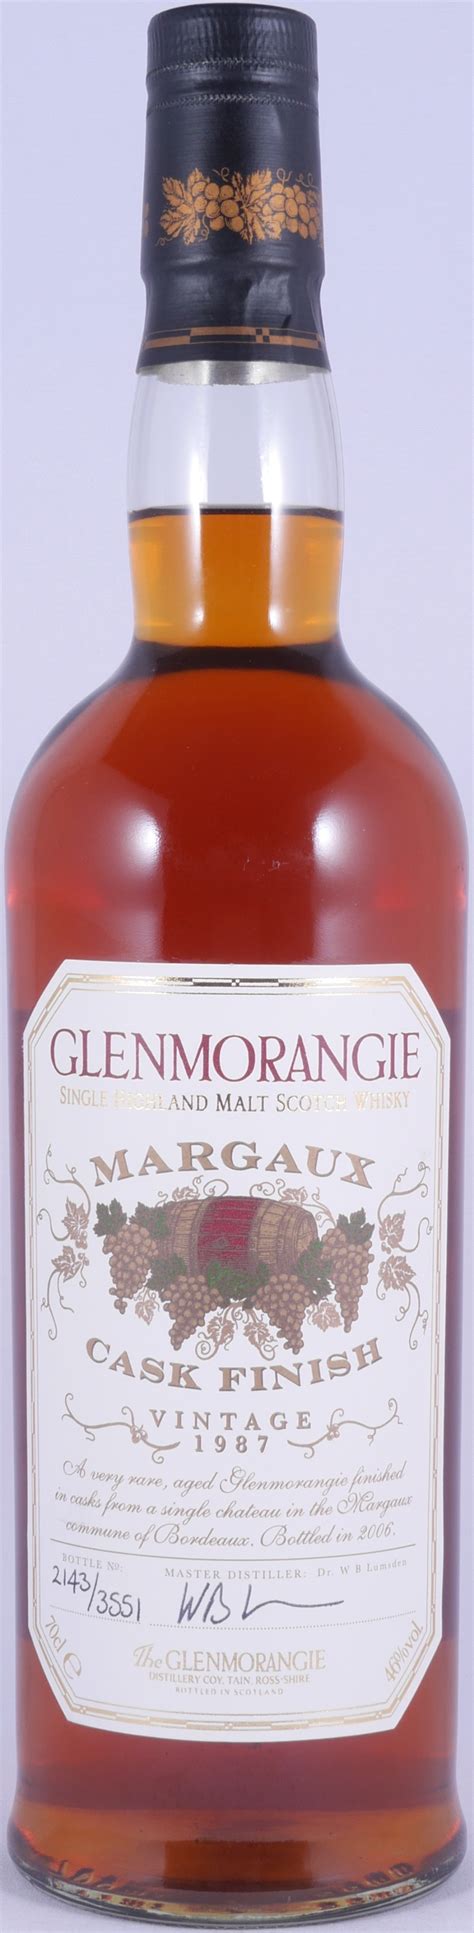 glenmorangie 1987 18 years chateau margaux cask finish highland single malt scotch whisky 46 0